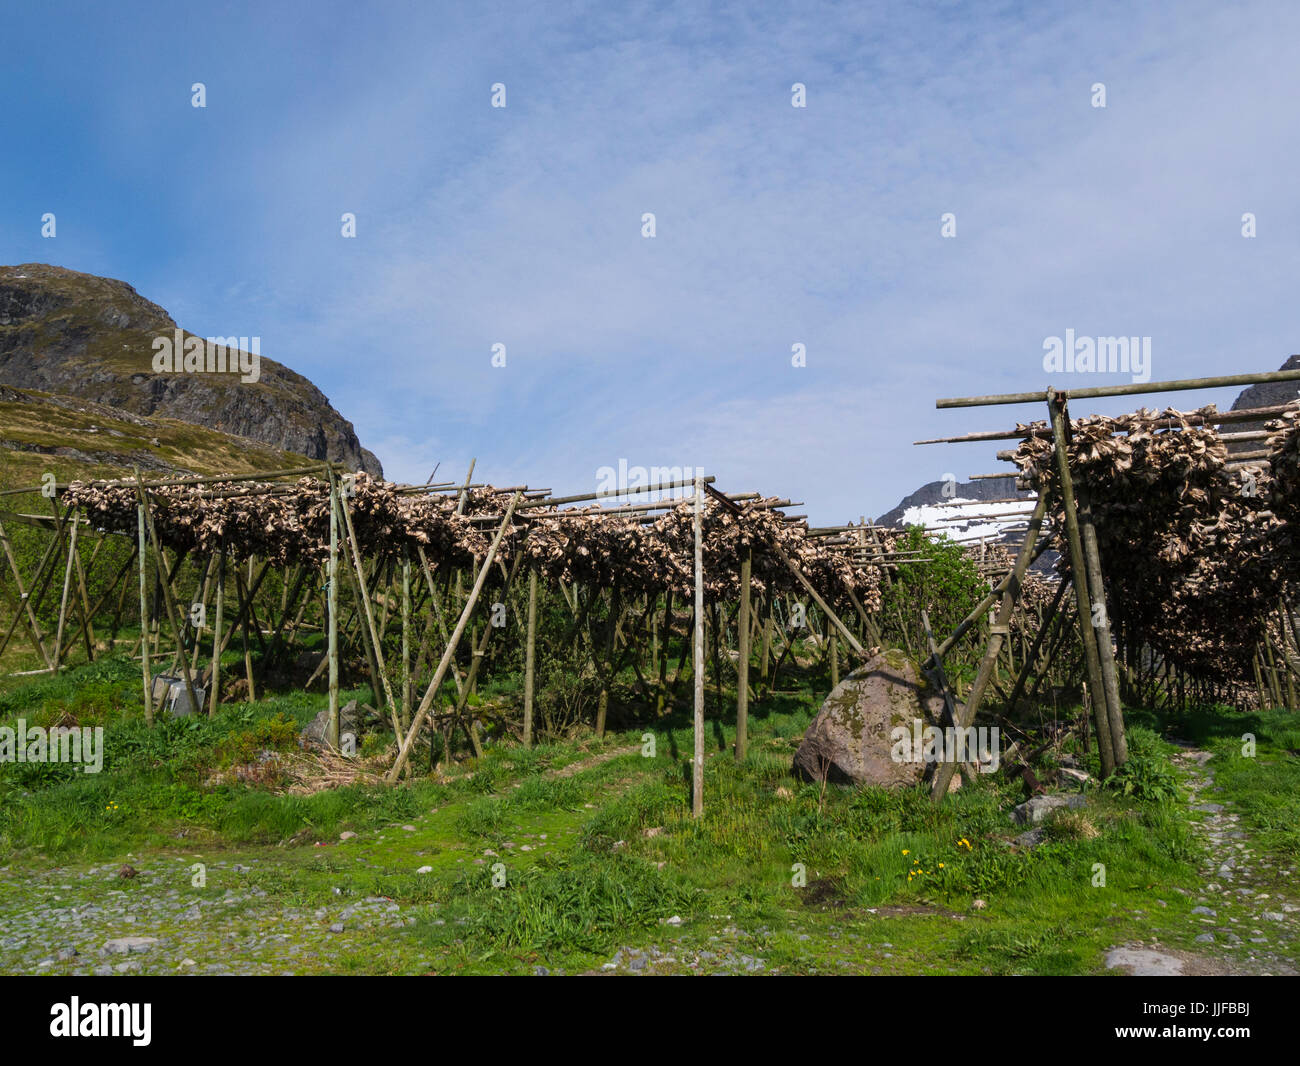 Stockfisch-Gestellen mit Reihen von ungesalzener Kabeljau trocknen in kalte  Luft und Wind Lofoten-Inseln Norwegen Stockfotografie - Alamy